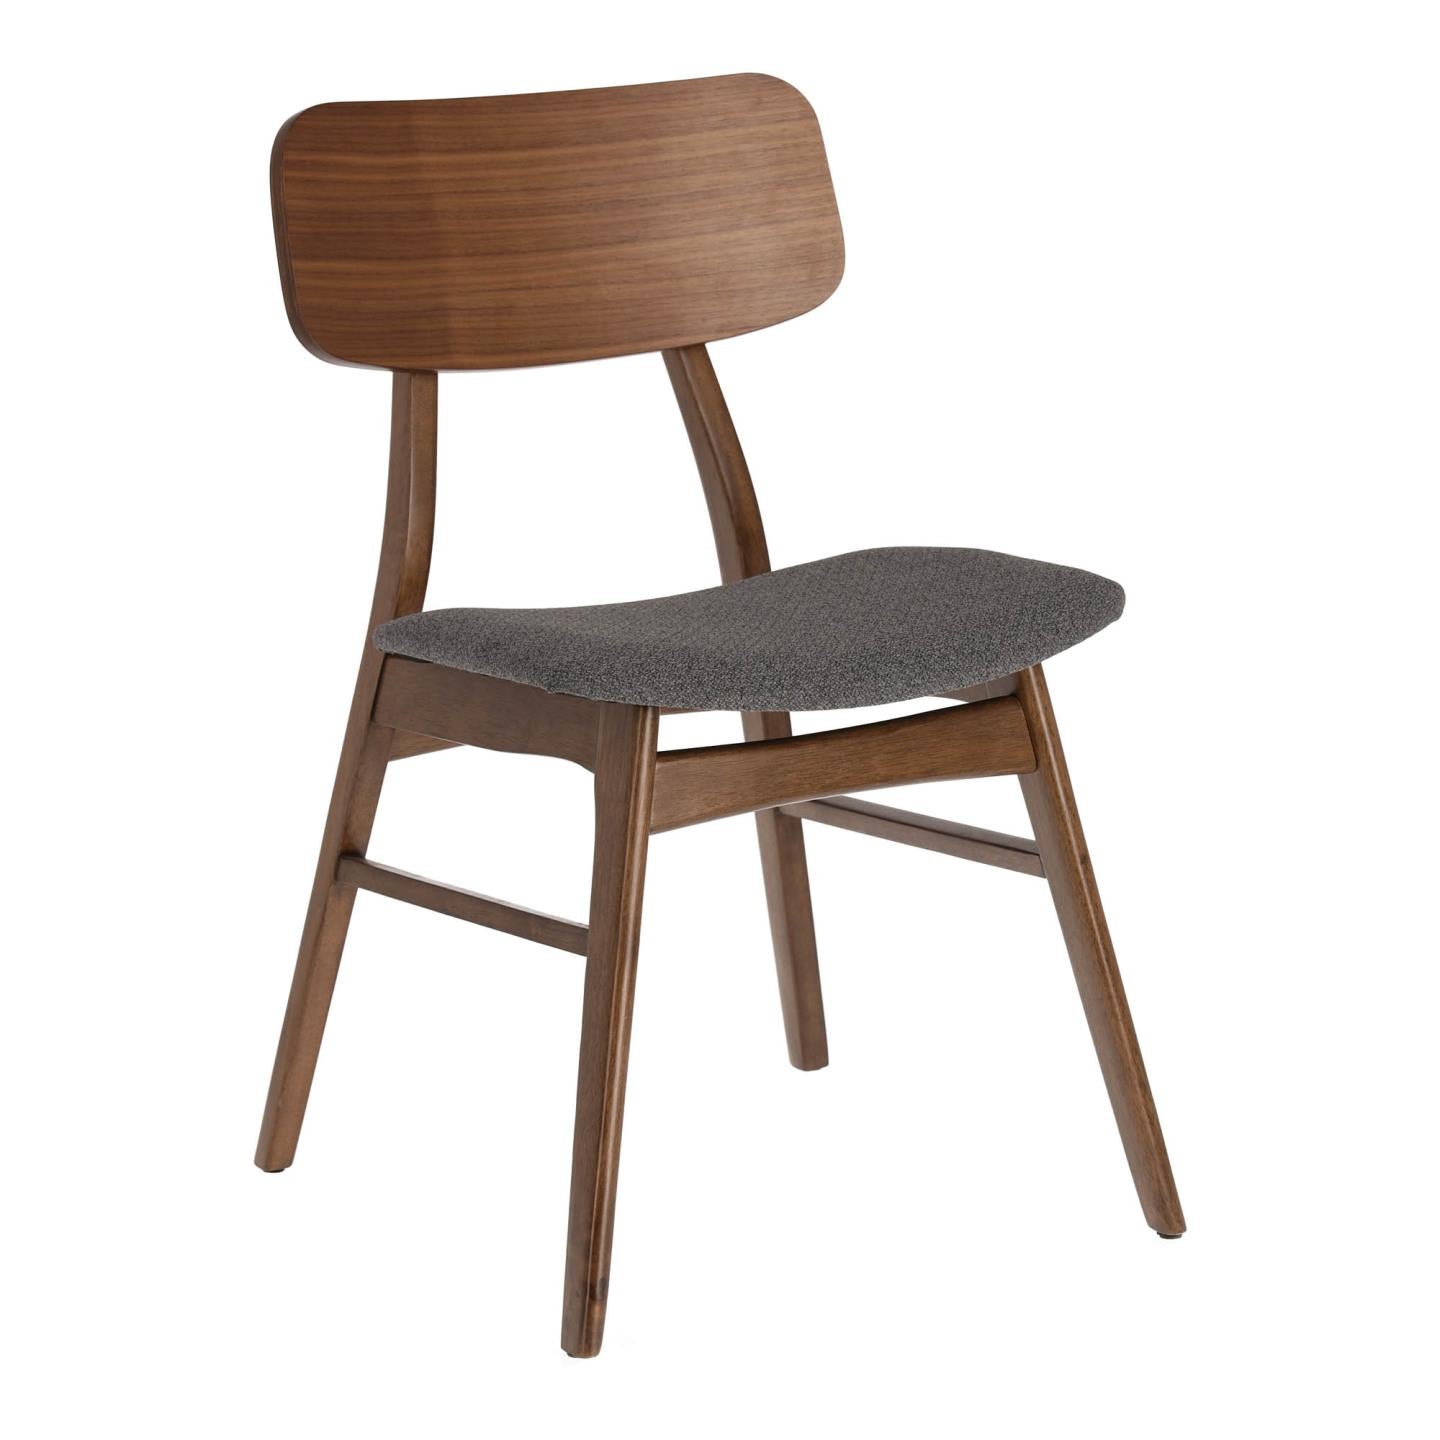 Selia chair in solid rubber wood, oak veneer and dark grey upholstery